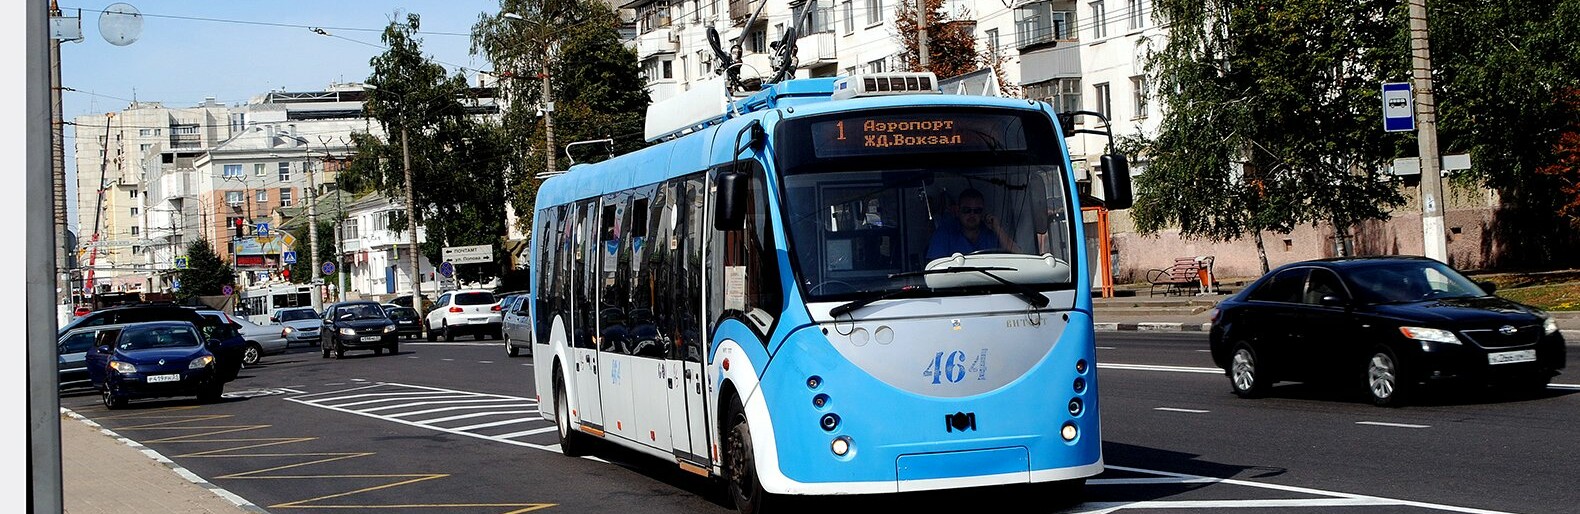 Белгородцы попросили Путина защитить троллейбусы. Видео